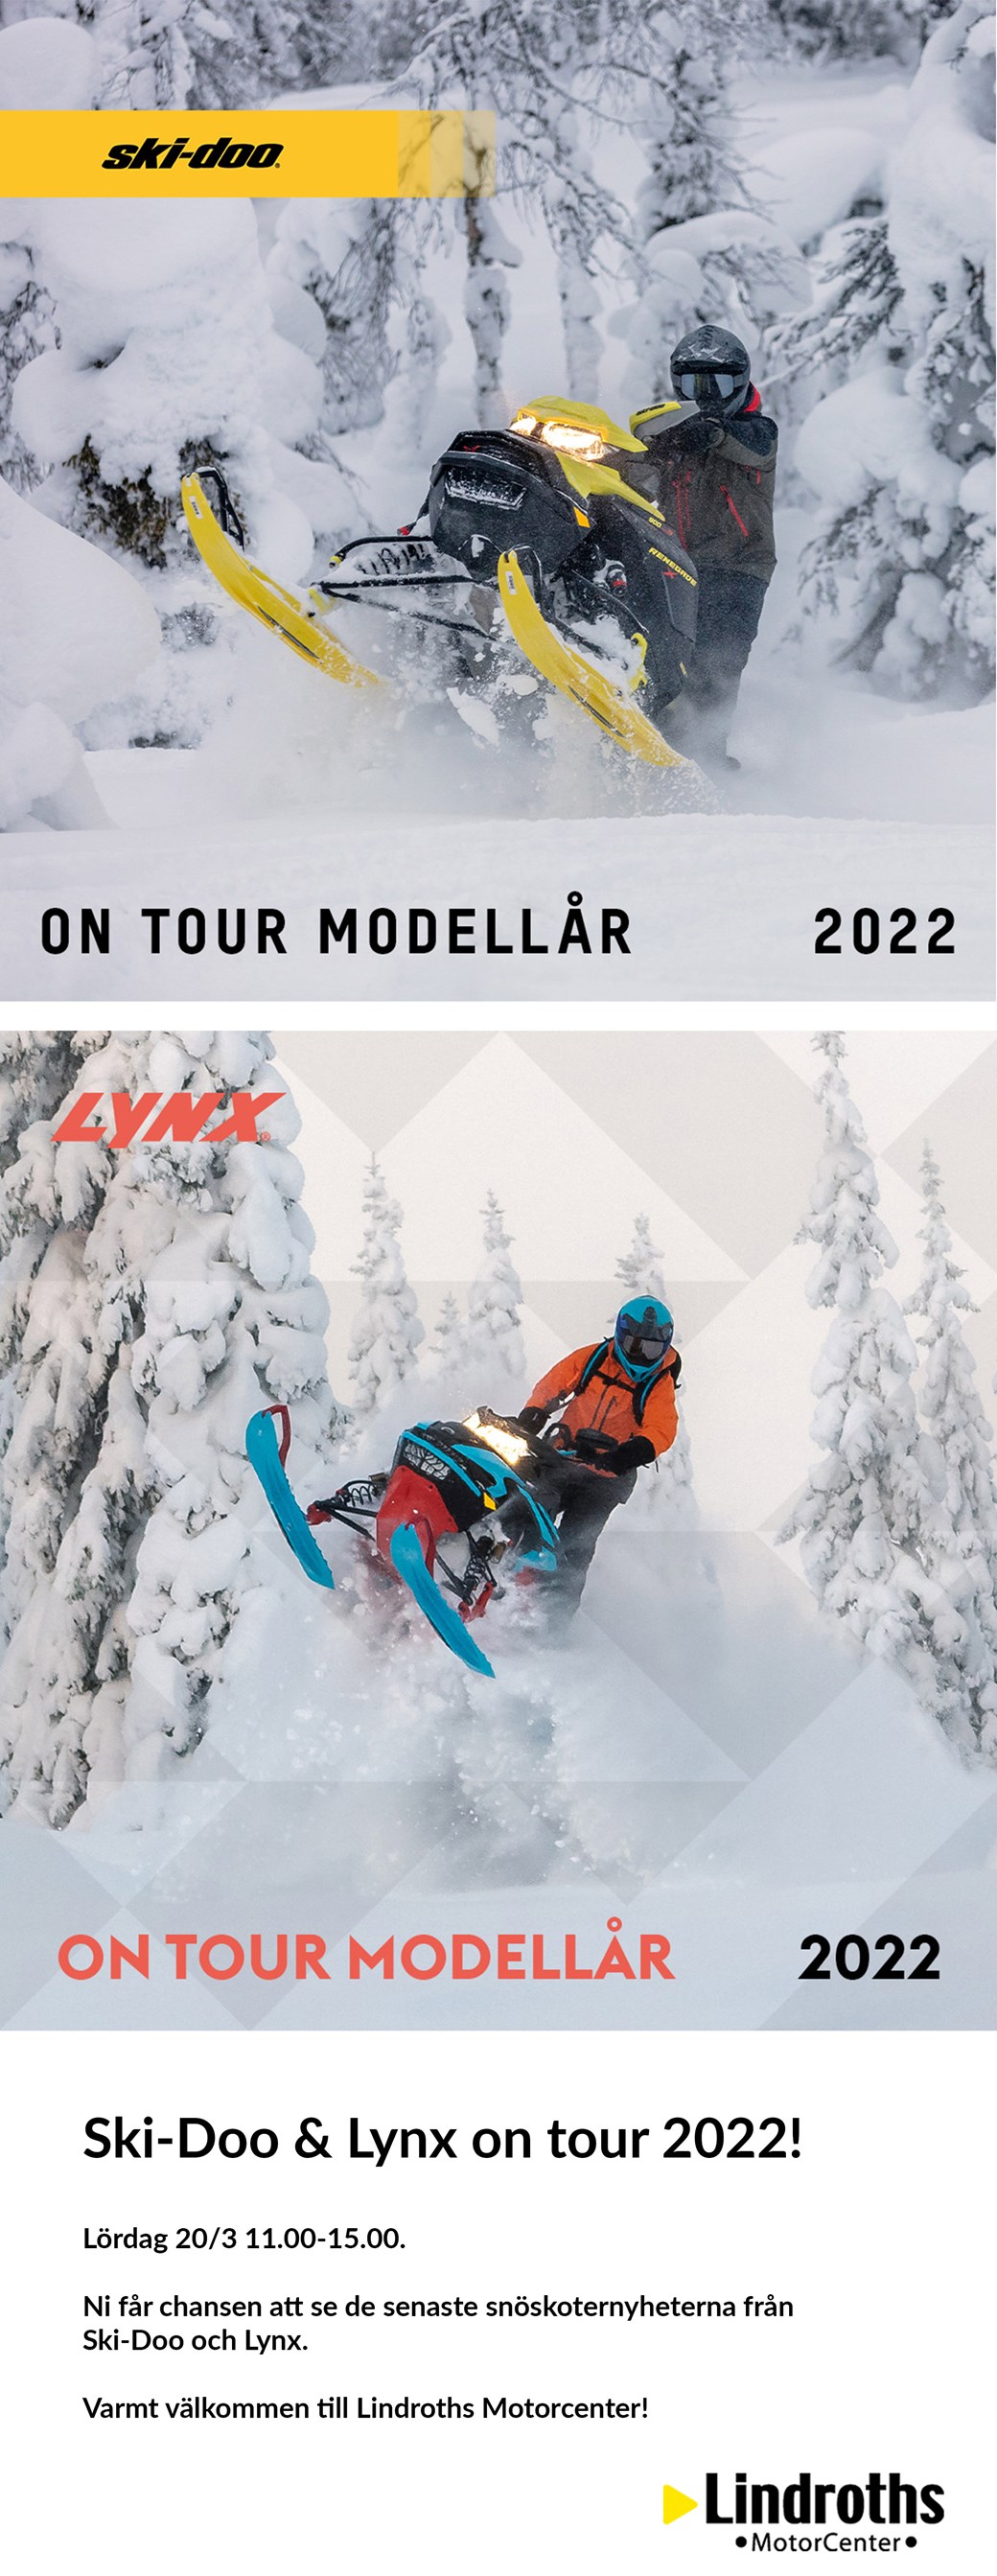 Ski-Doo & Lynx on tour 2022!